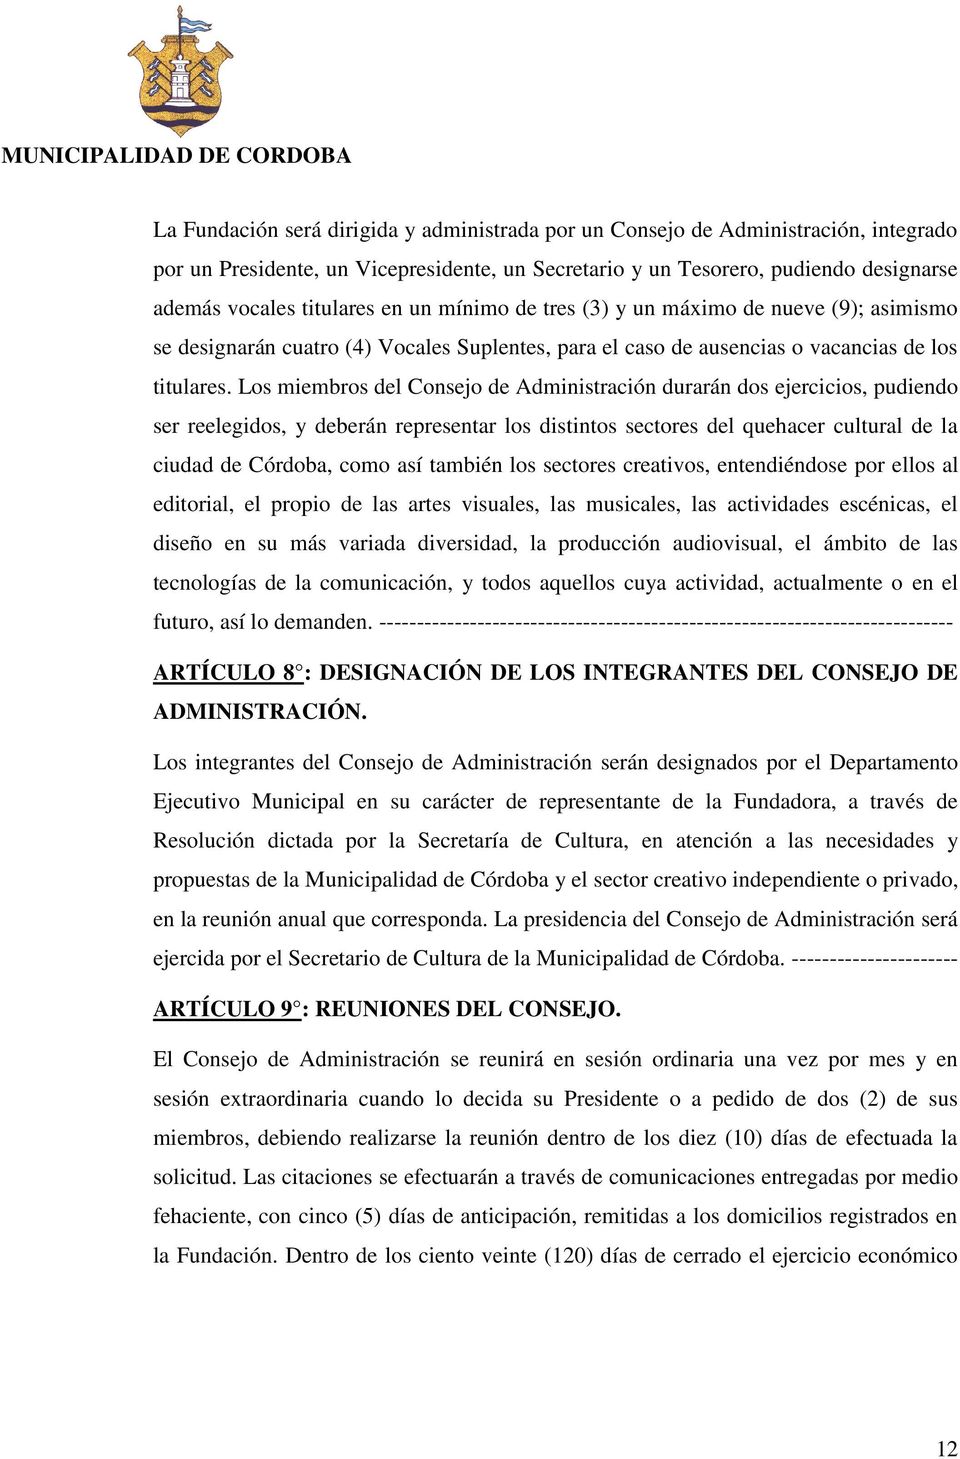 Los miembros del Consejo de Administración durarán dos ejercicios, pudiendo ser reelegidos, y deberán representar los distintos sectores del quehacer cultural de la ciudad de Córdoba, como así